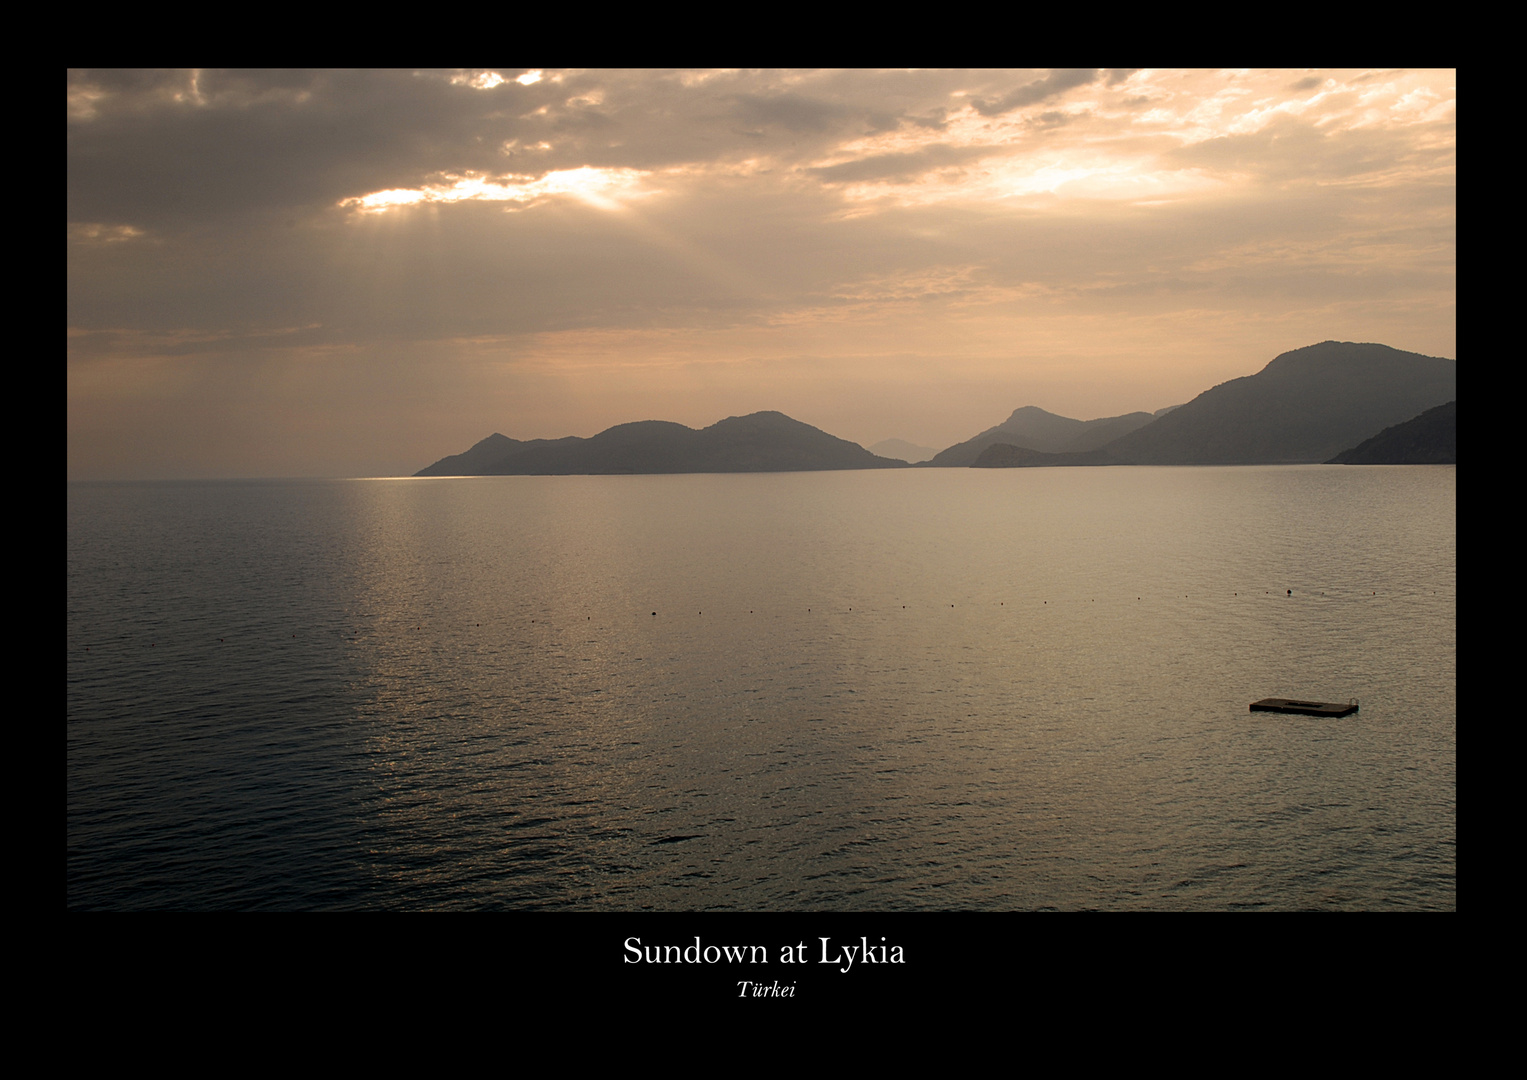 Sundown at Lykia